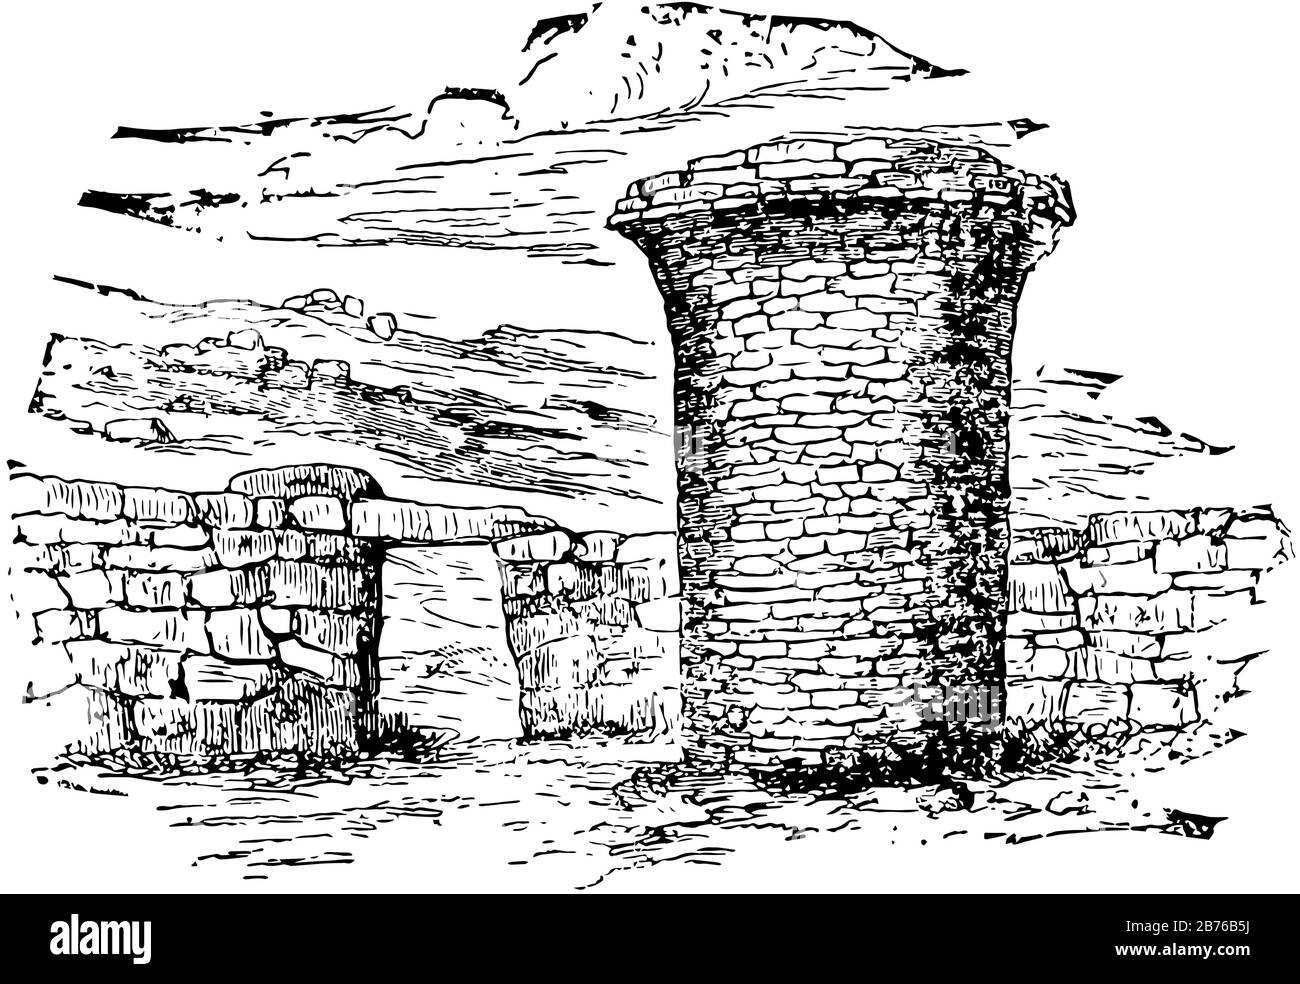 Grabturm ist die Encyclopaedia Britanica, Land oder Meer sind inakzeptabel, erhöhte Struktur gebaut, Vintage-Linie Zeichnung oder Gravur Illustration. Stock Vektor